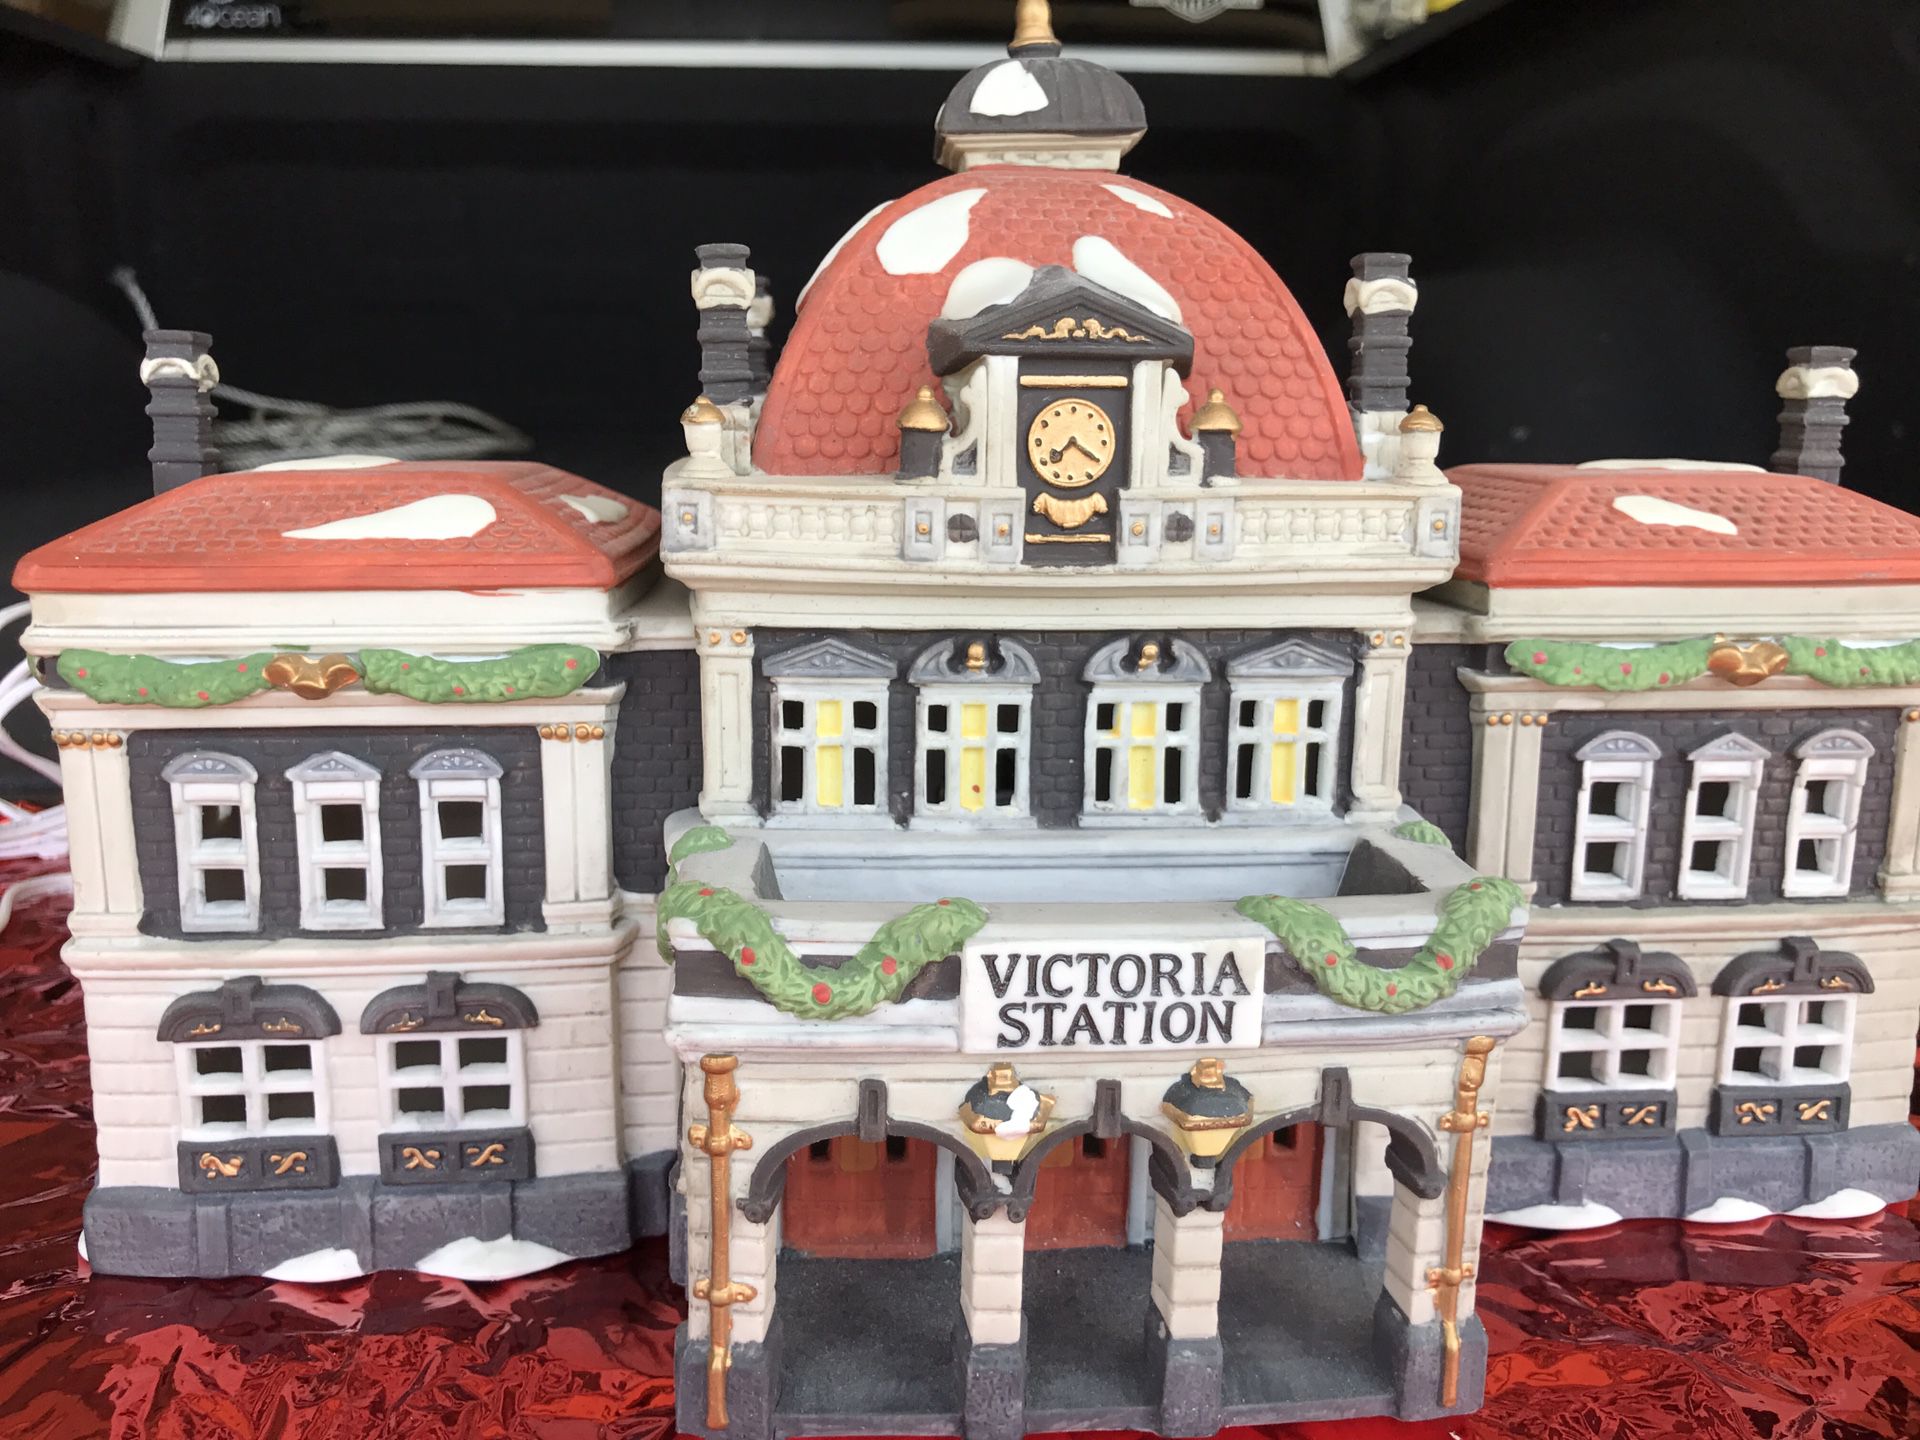 Dickens Village Series, Victoria Station